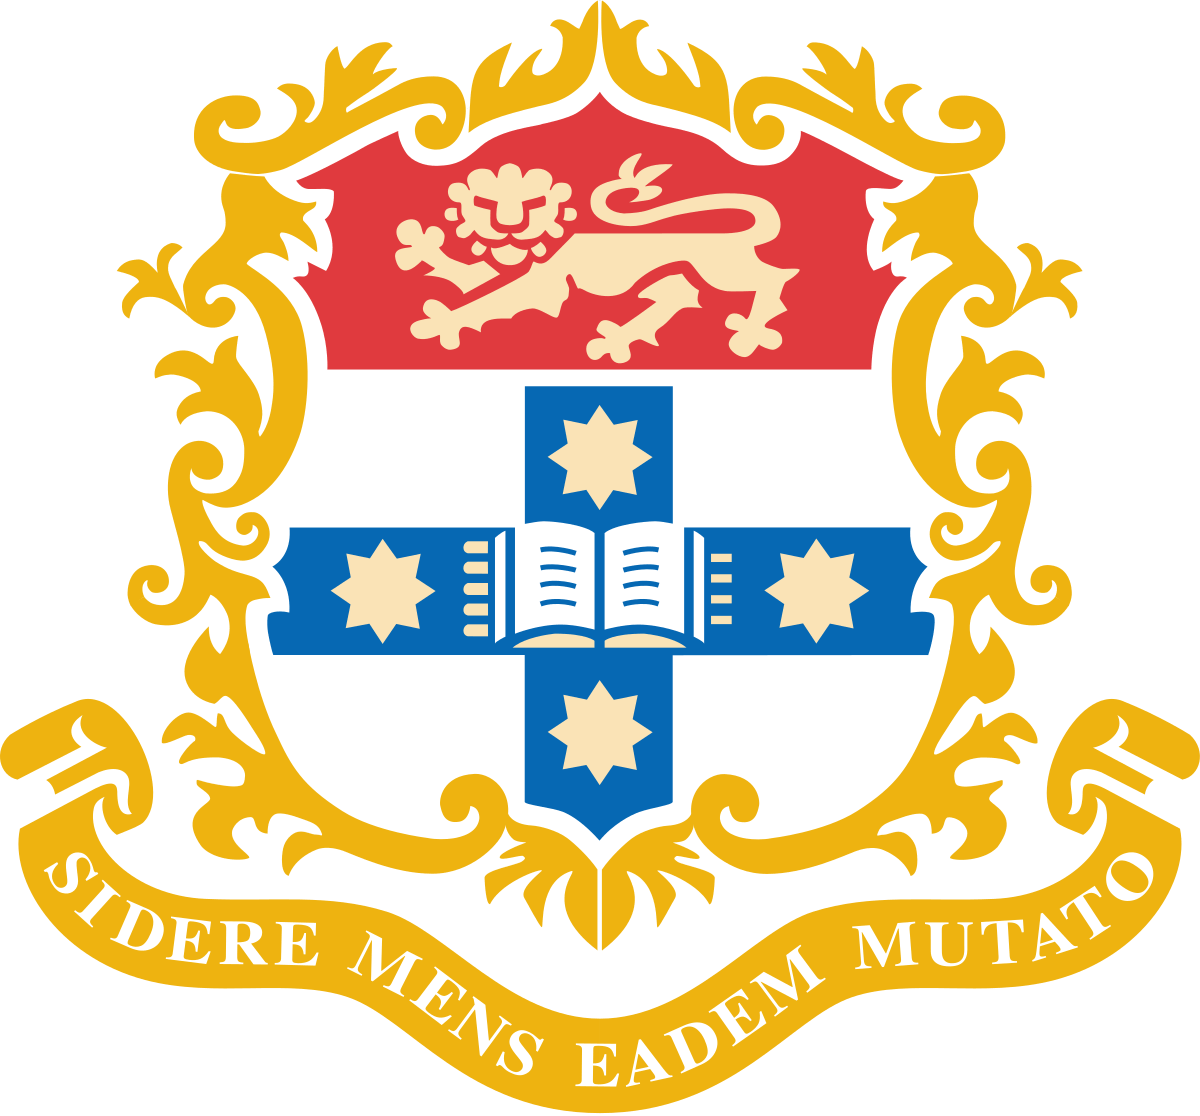 Most Popular University Logo - University of Sydney